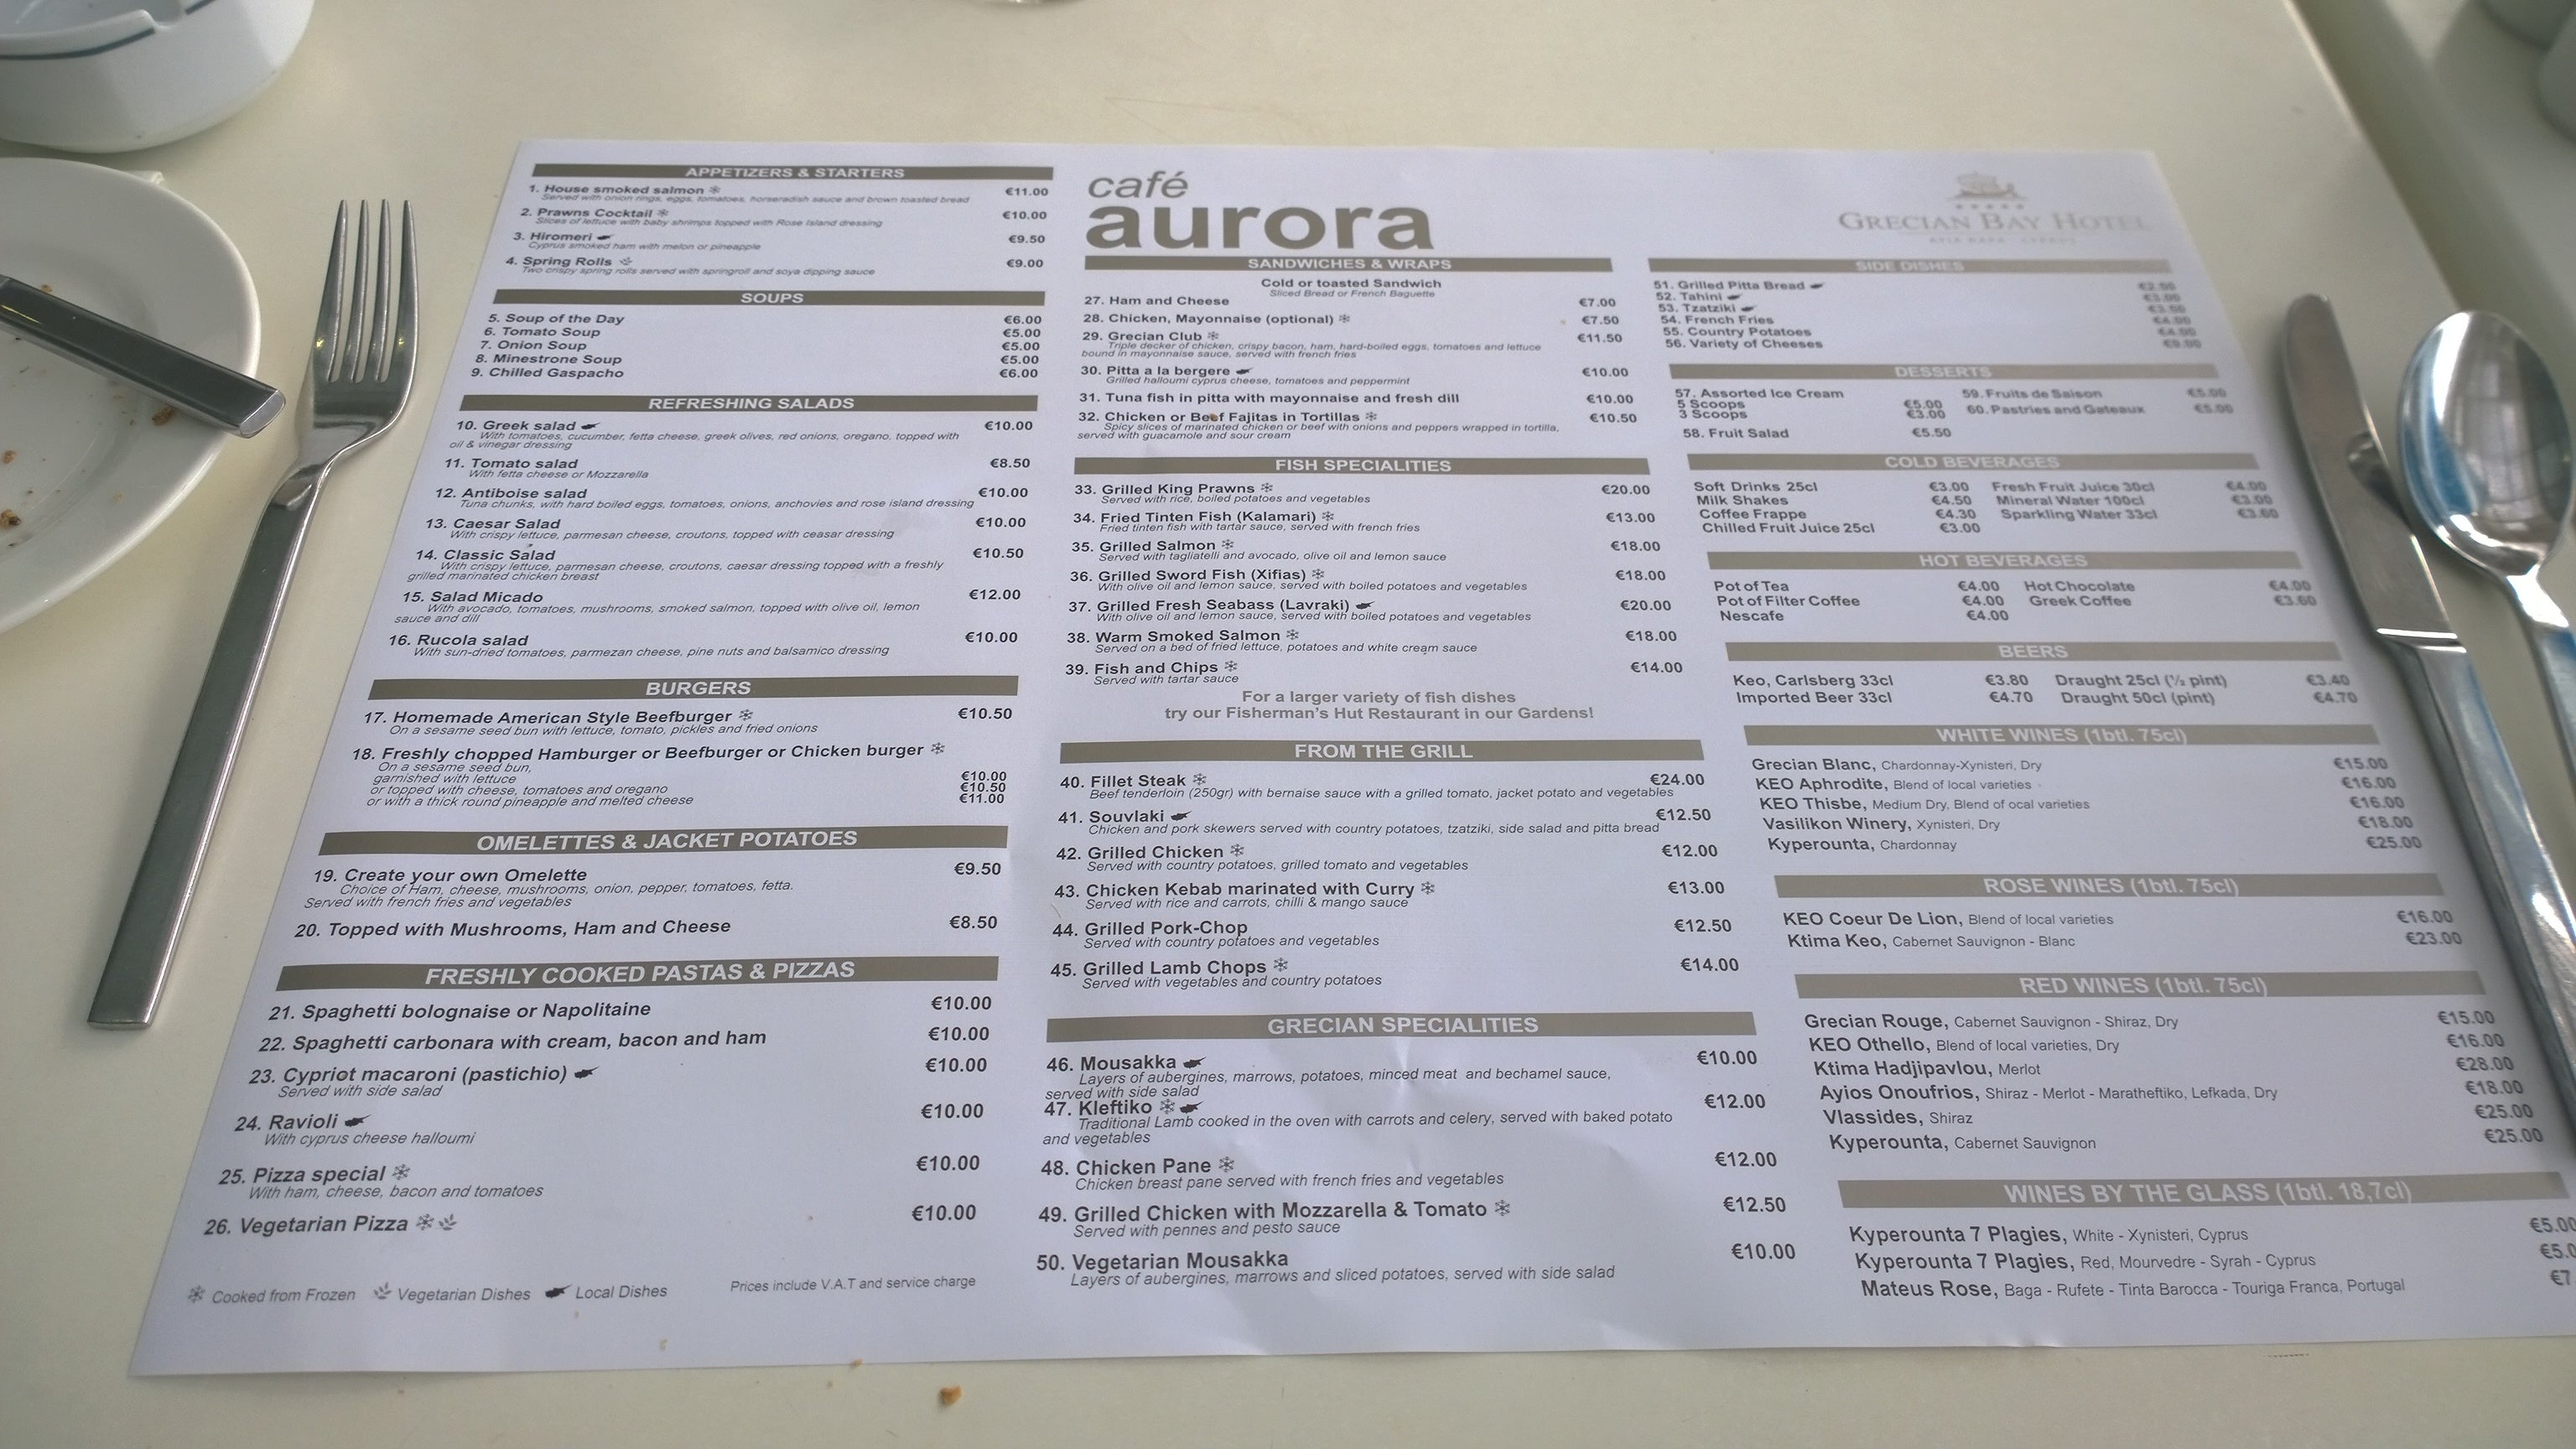 Aurora Restaurant